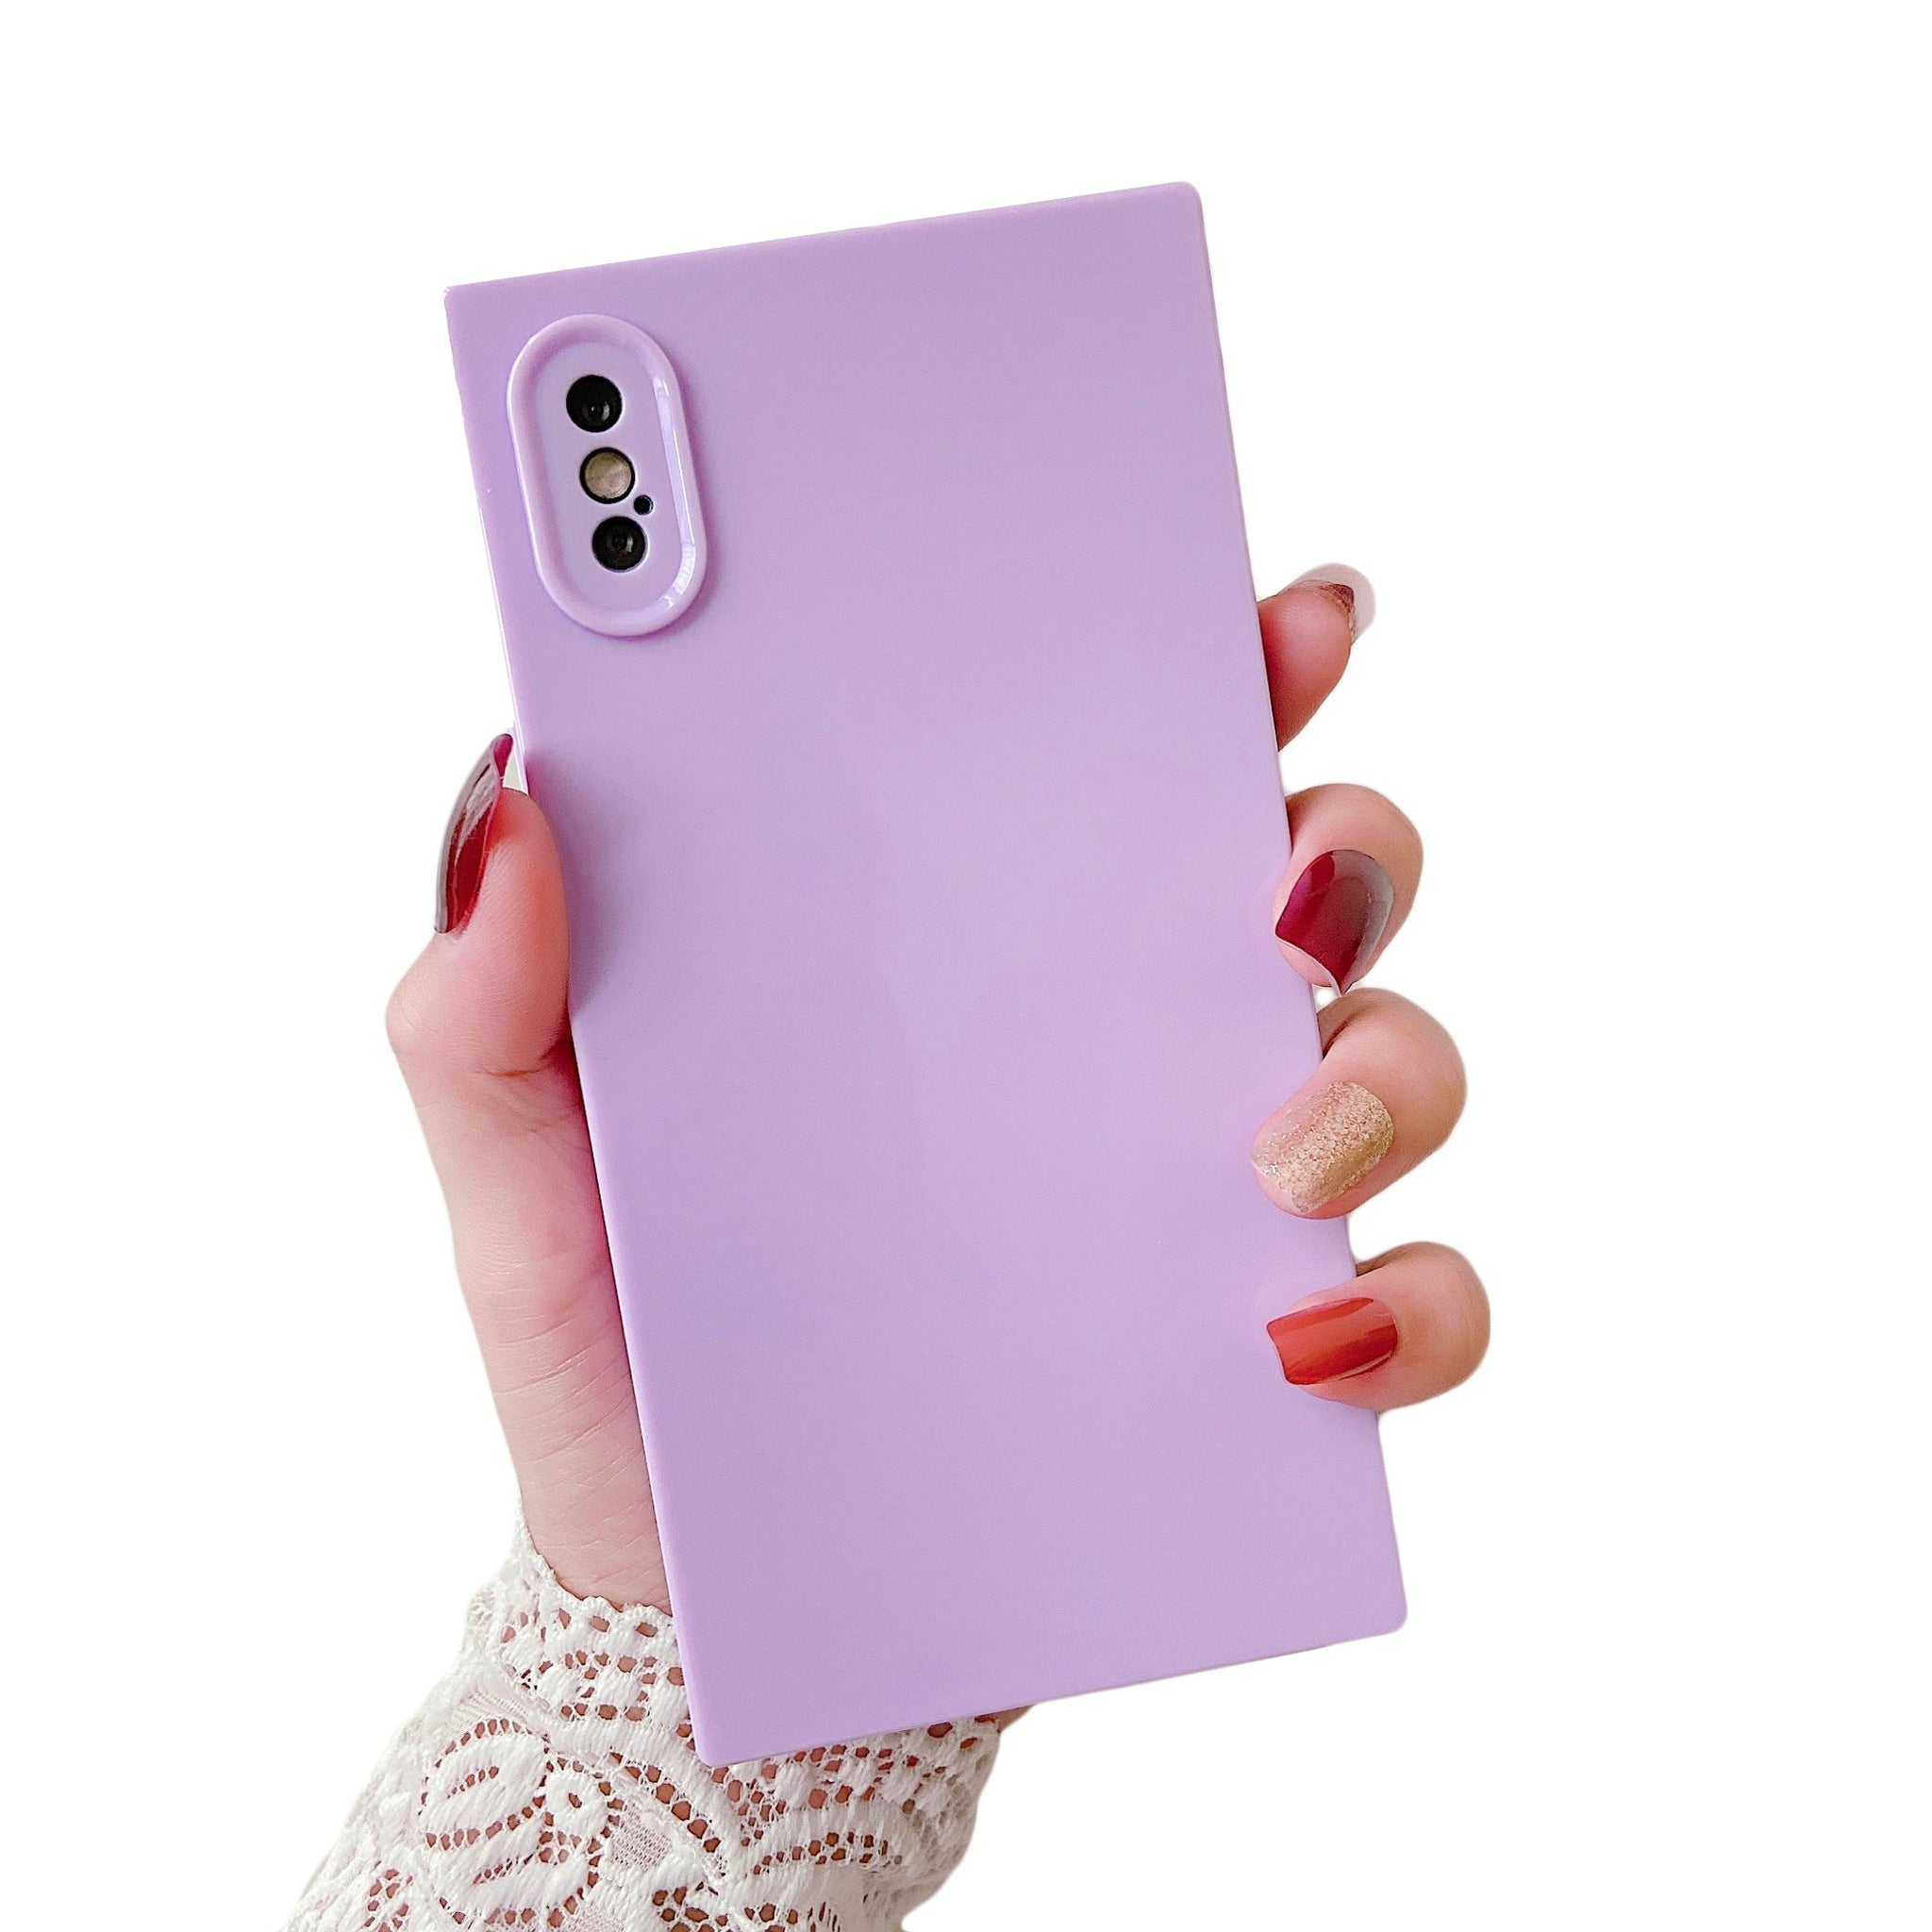 iPhone XS Max Case Square Plain Color (Purple)